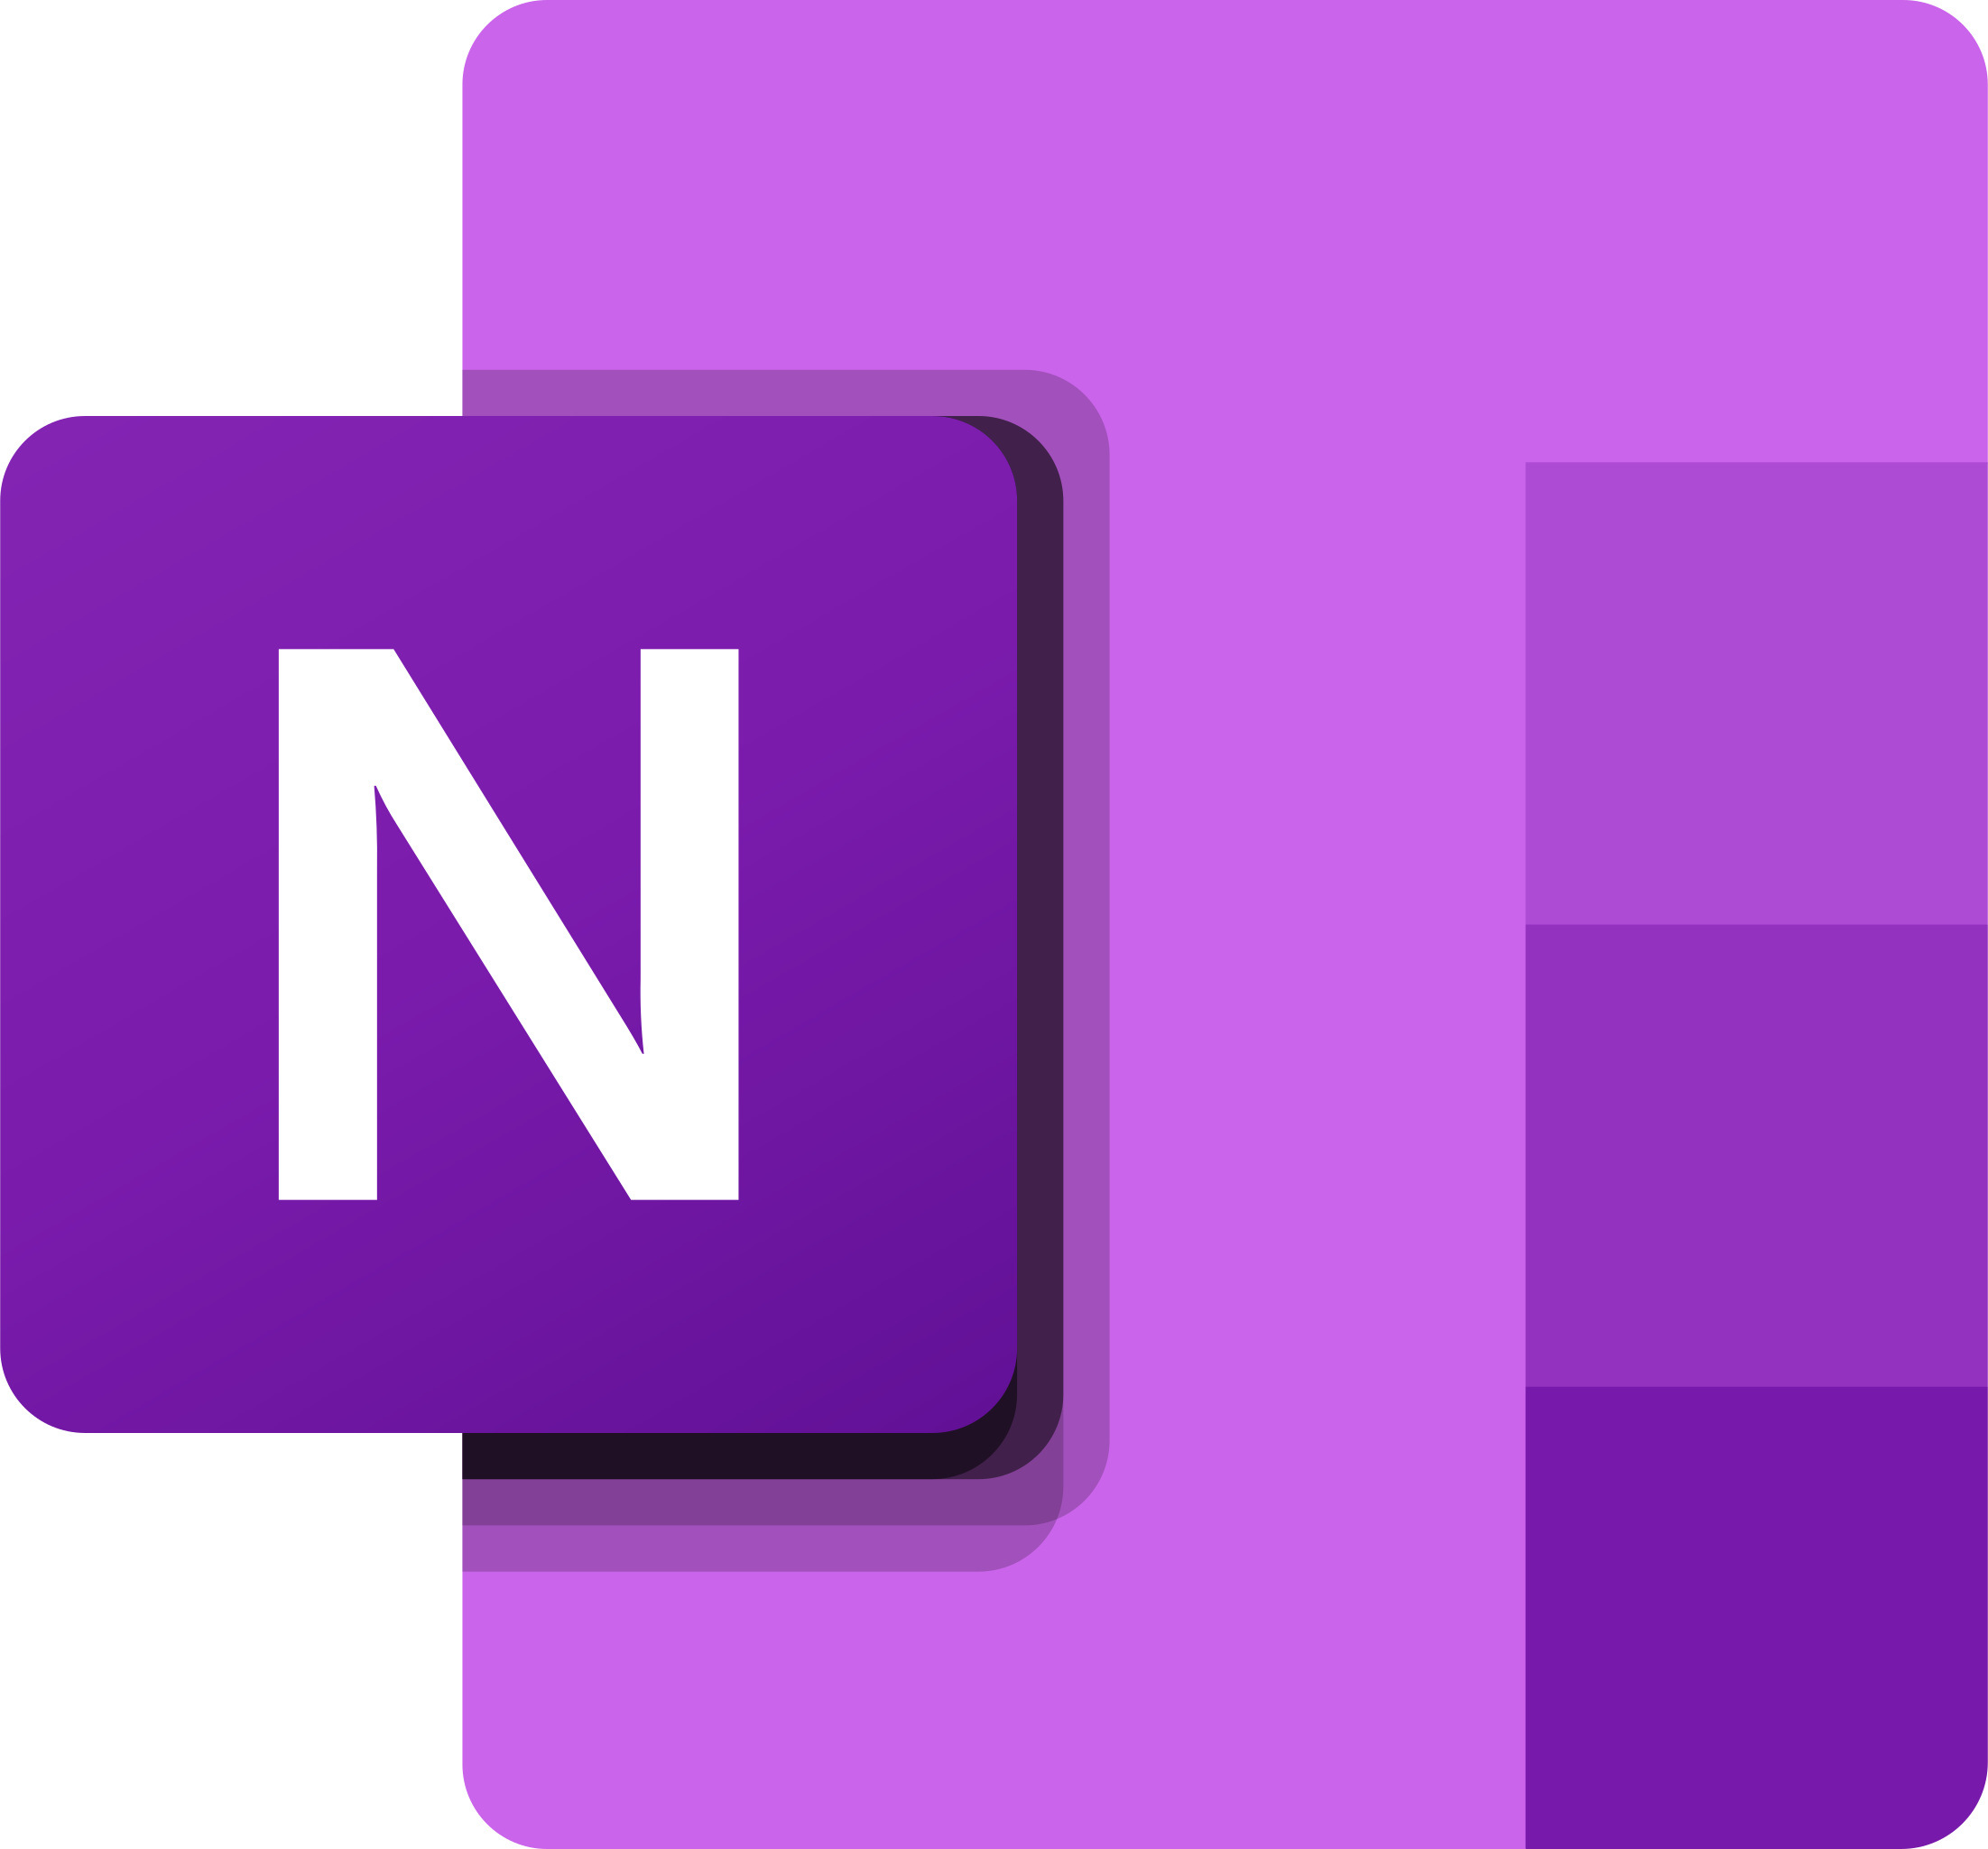 Microsoft OneNote app icon